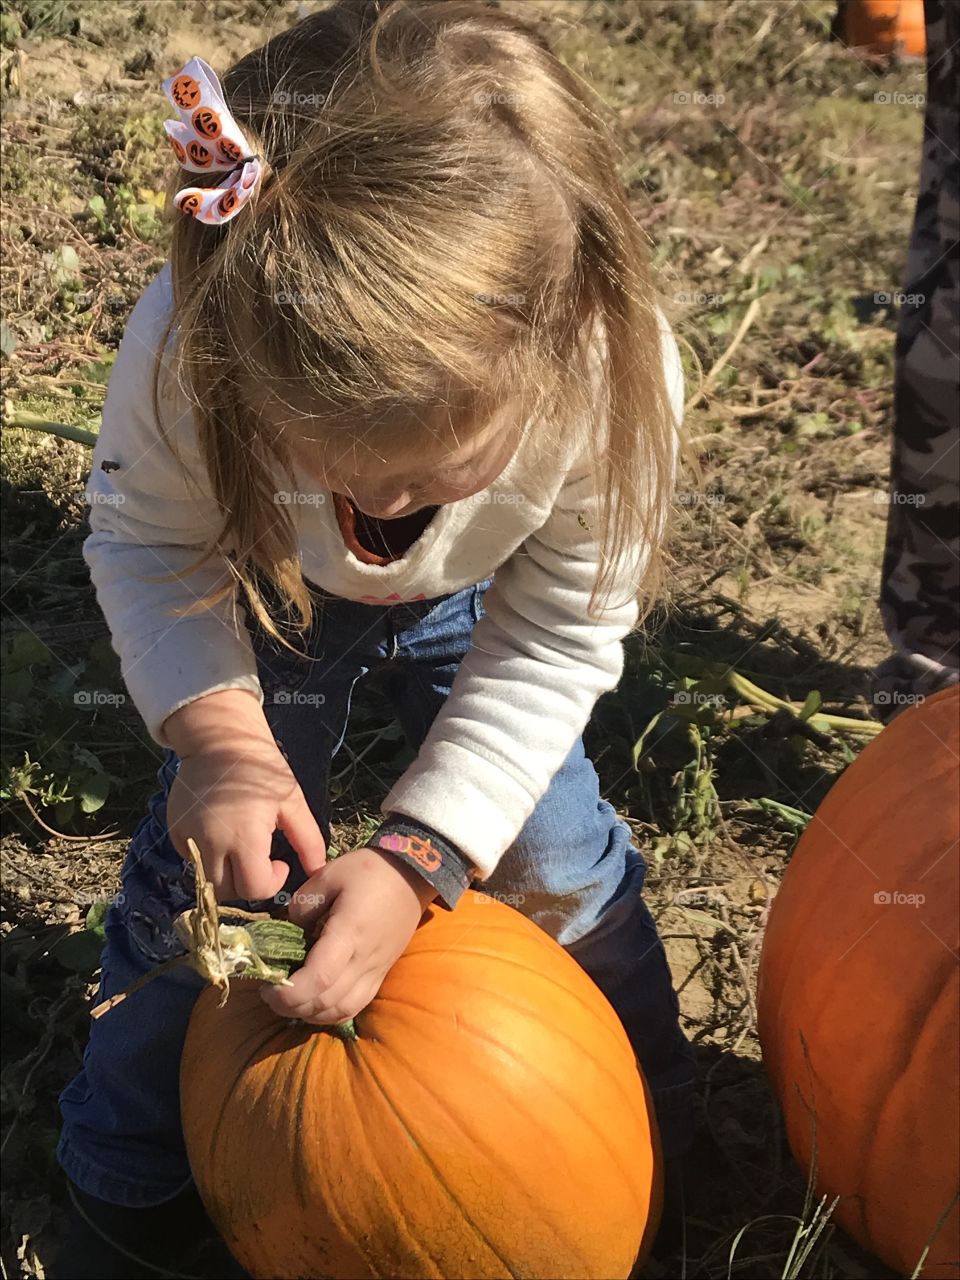 Adorable Toddler picking orange pumpkins